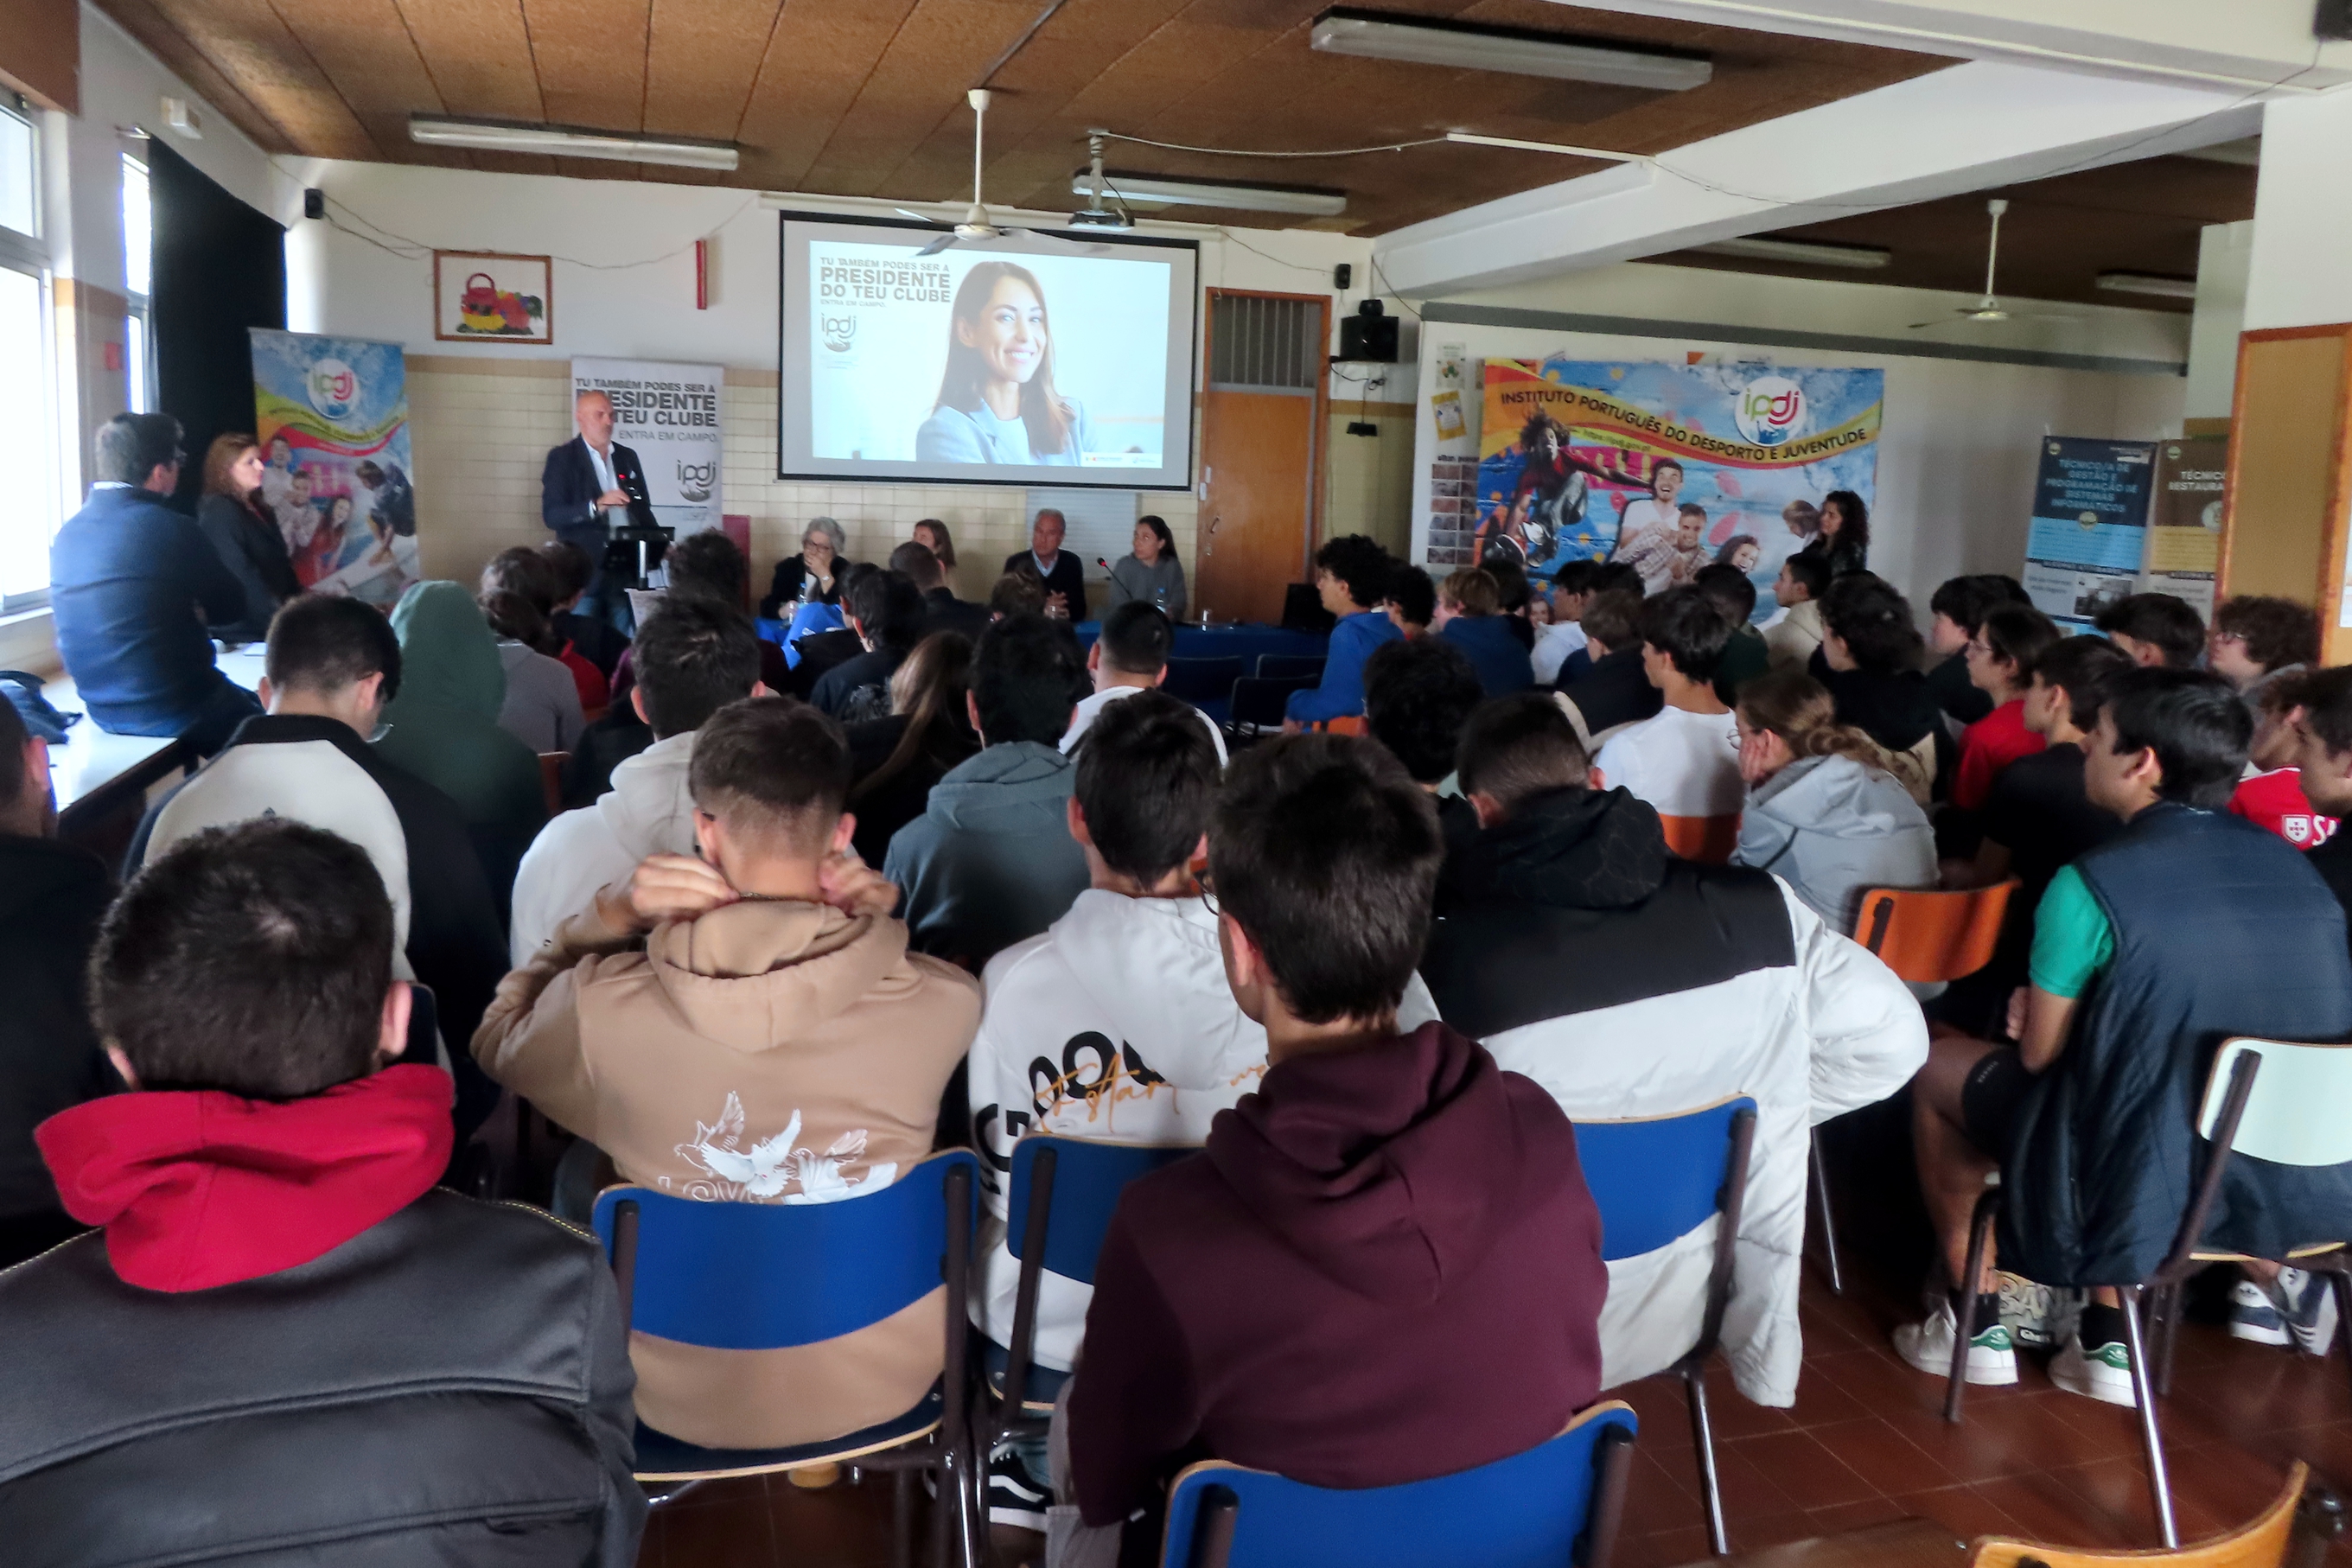 Apresentação da campanha por Miguel Rasquinho, diretor regional do Alentejo do IPDJ, em sala, com as/os jovens participantes, técnicas/os do IPDJ, e convidadas/os.